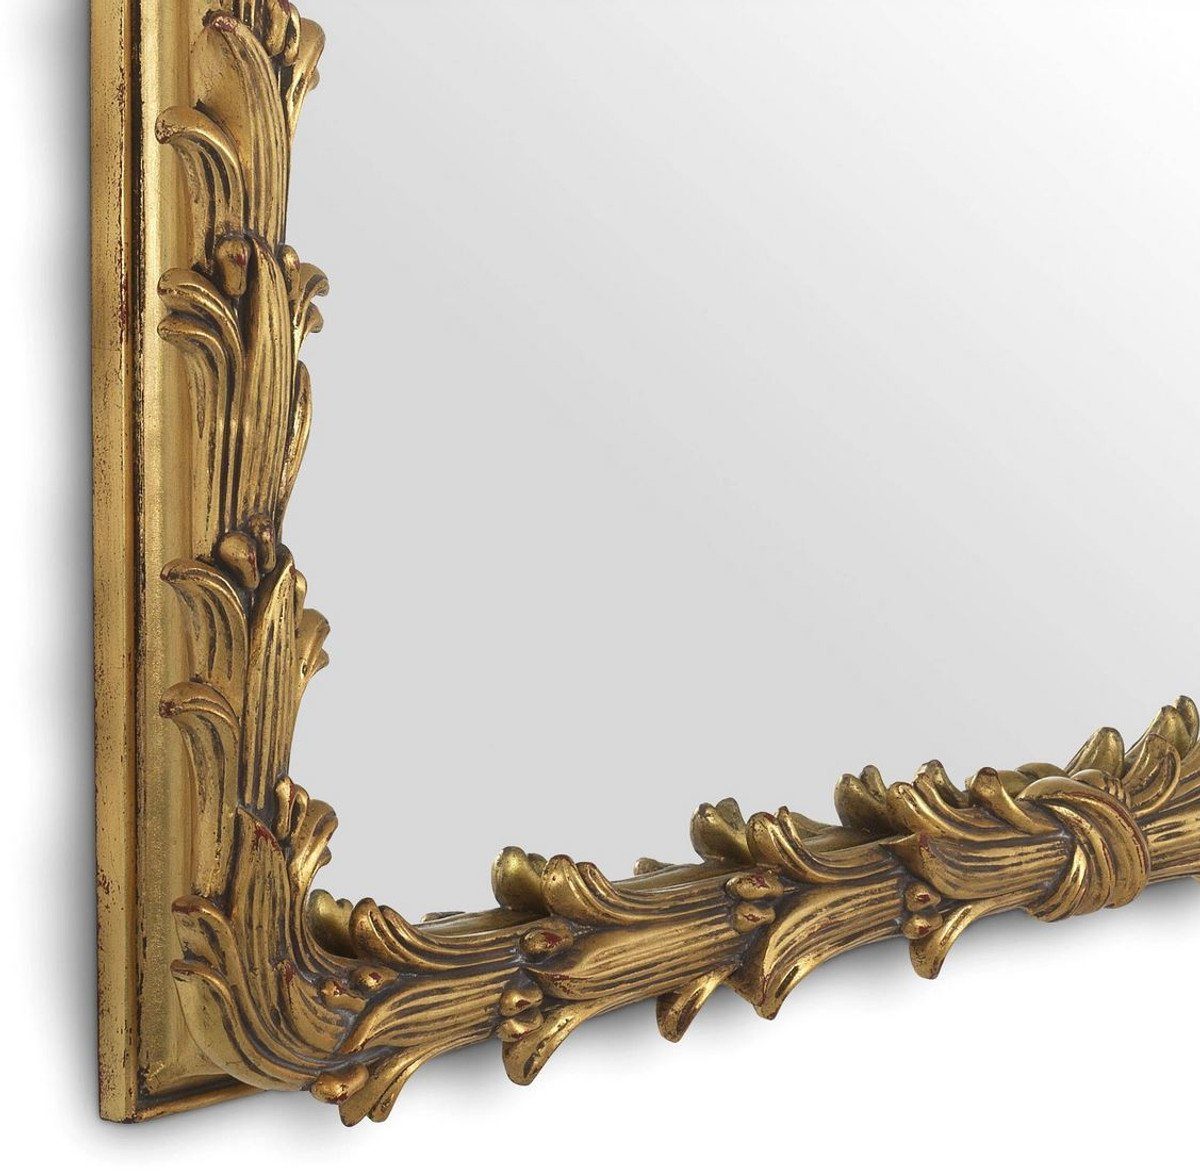 Spiegel Mahagoni 93 - Garderobenspiegel Luxus - Casa Kollektion Spiegel Wandspiegel 6,5 Spiegel H. cm x 130 - Gold Antik Padrino x - Luxus Wohnzimmer